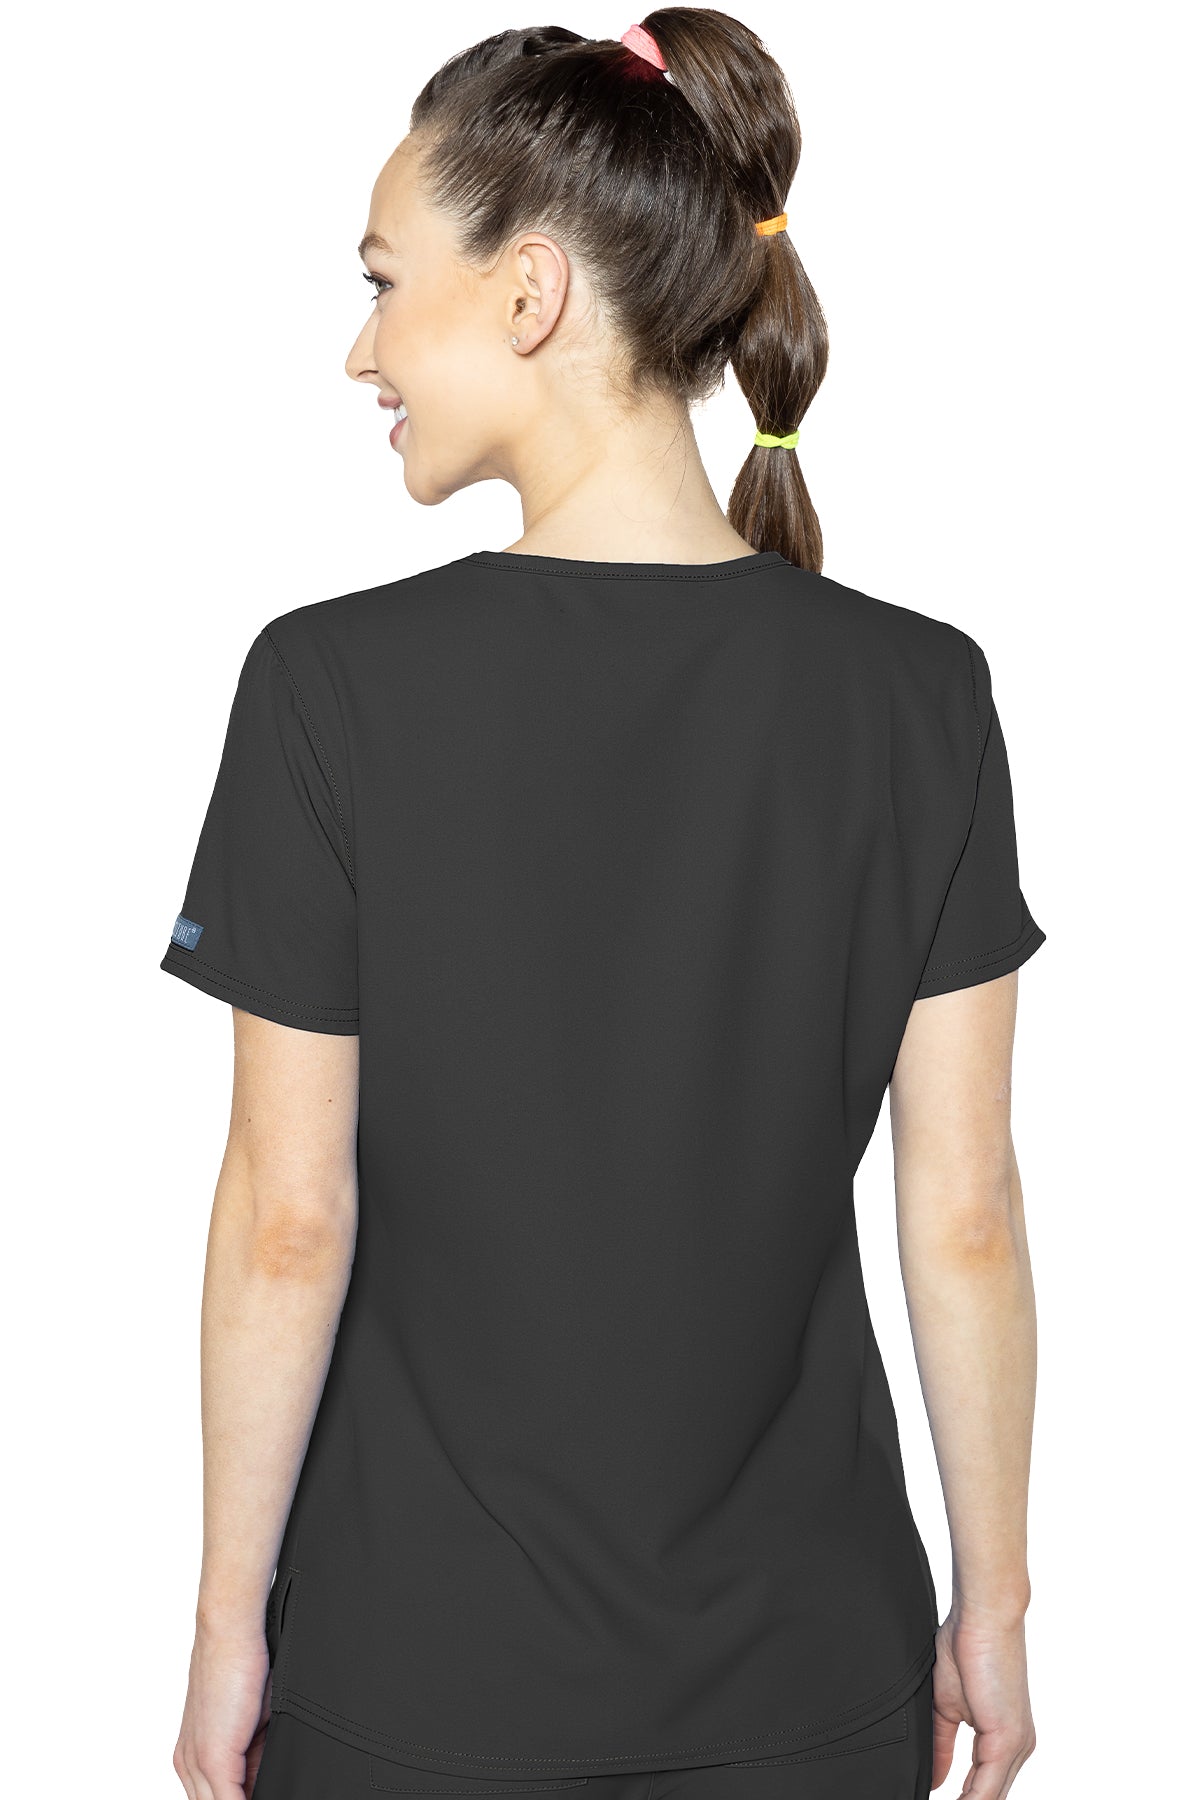 Med Couture 2468 Insight Side Pocket V-Neck Top black back